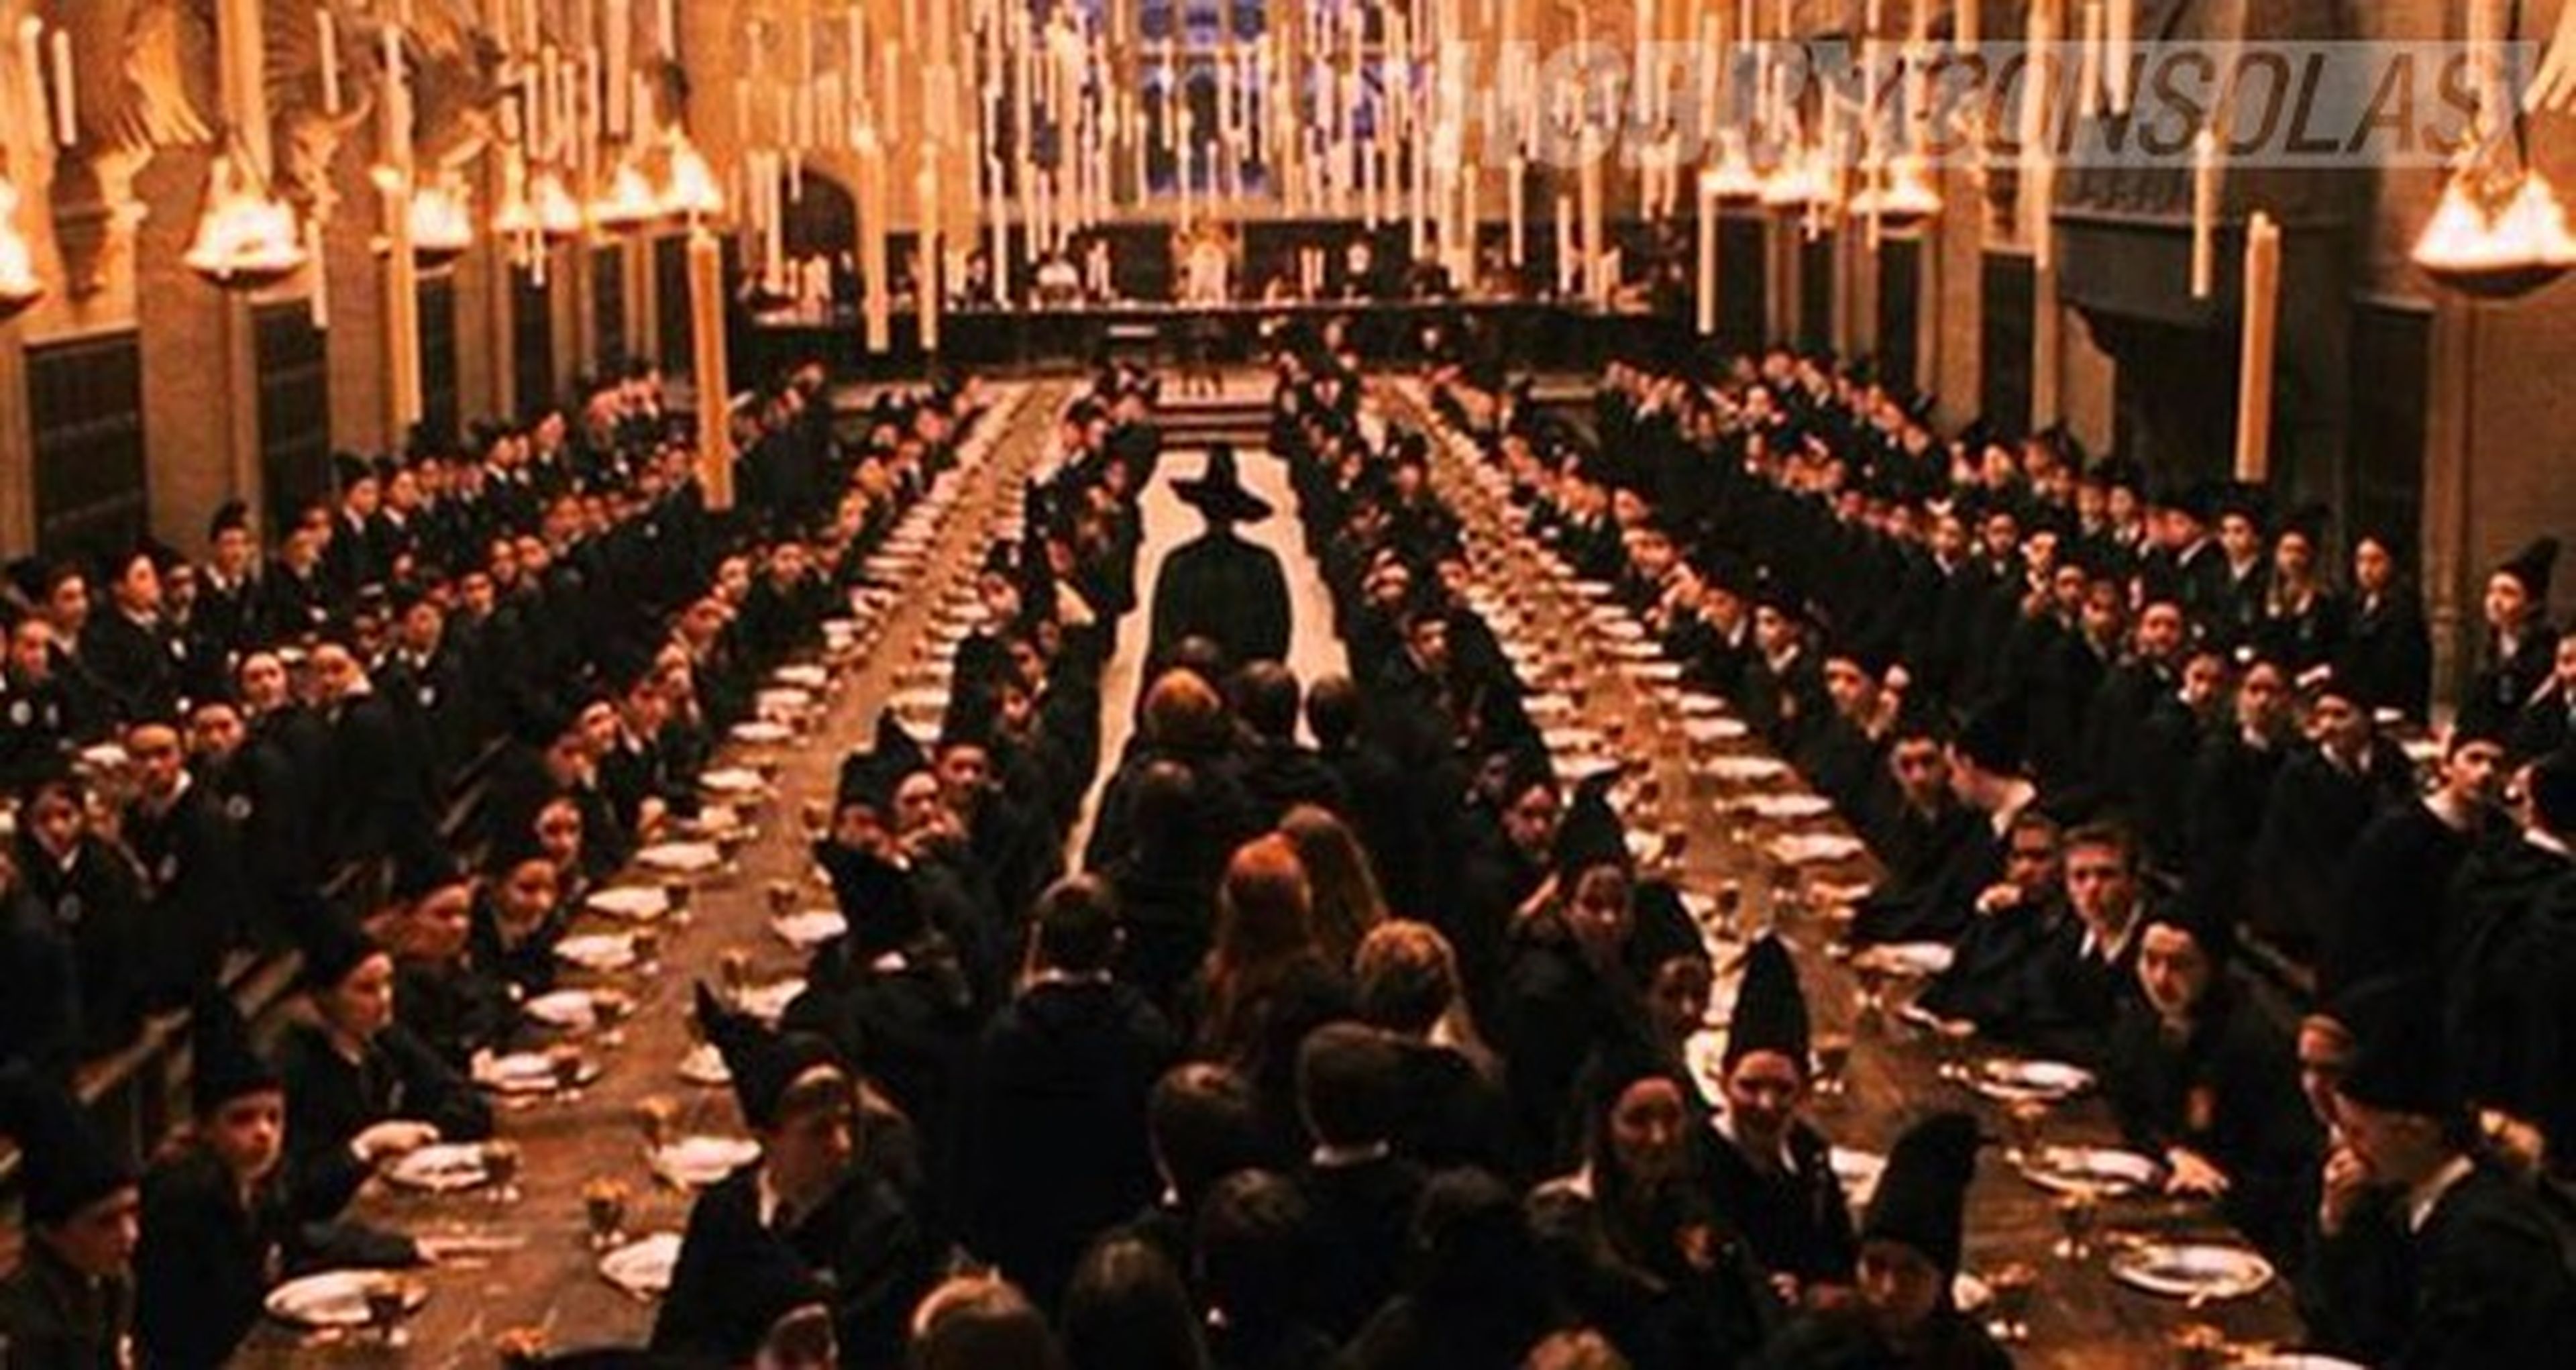 Harry Potter – La teoría que explicaría por qué hay tan pocos alumnos en Hogwarts